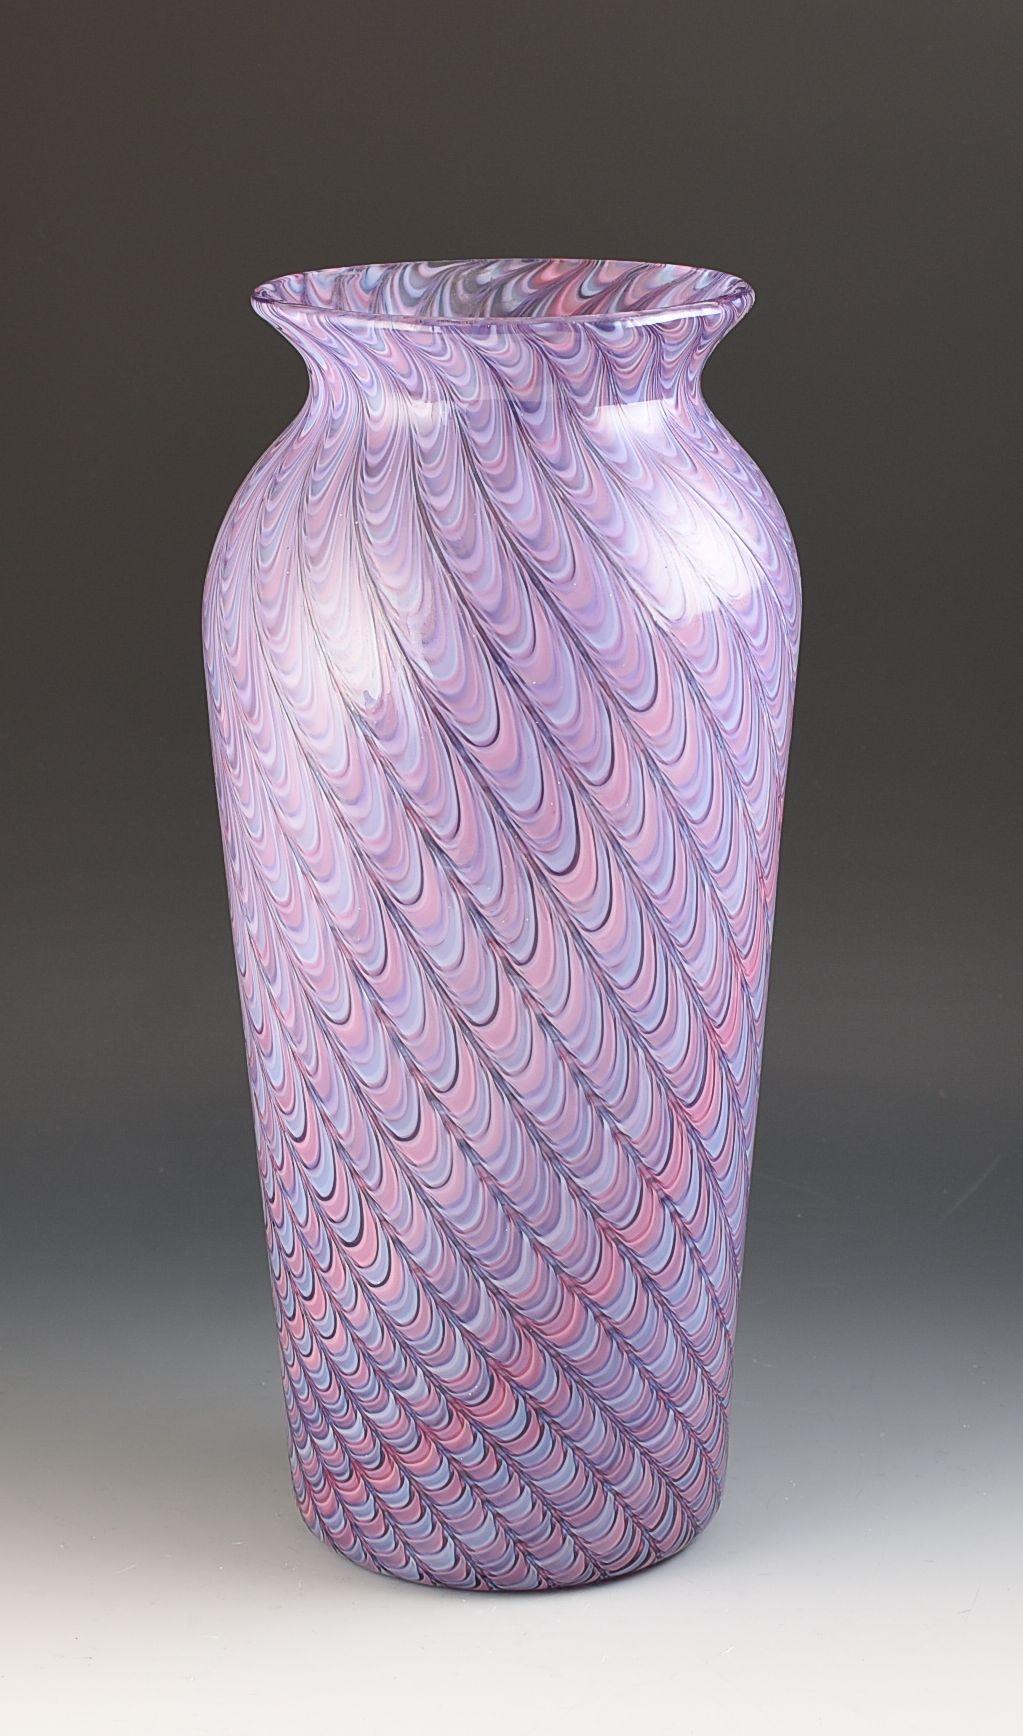 Magnifique vase italien signé Cenedese datant d'environ 1955. Technique parfaite et aucun problème. Le vase est en parfait état d'origine et mesure 36,5 cm de hauteur totale. Elle est signée Cenedese sur la base, ce qui a été difficile à